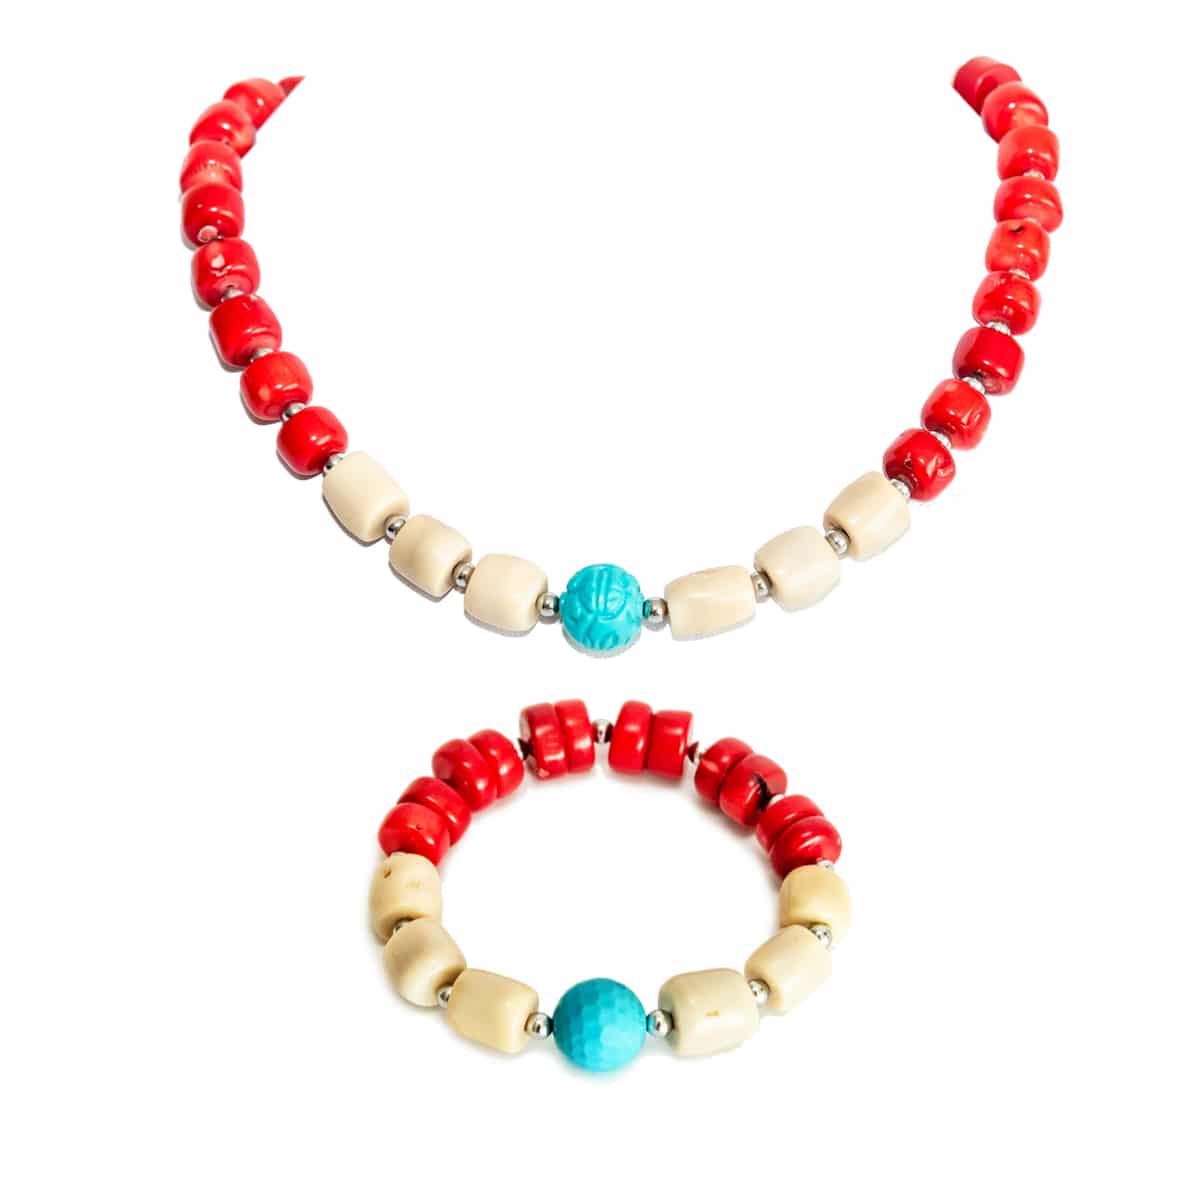 HONG BOCK design necklace / bracelet in coral